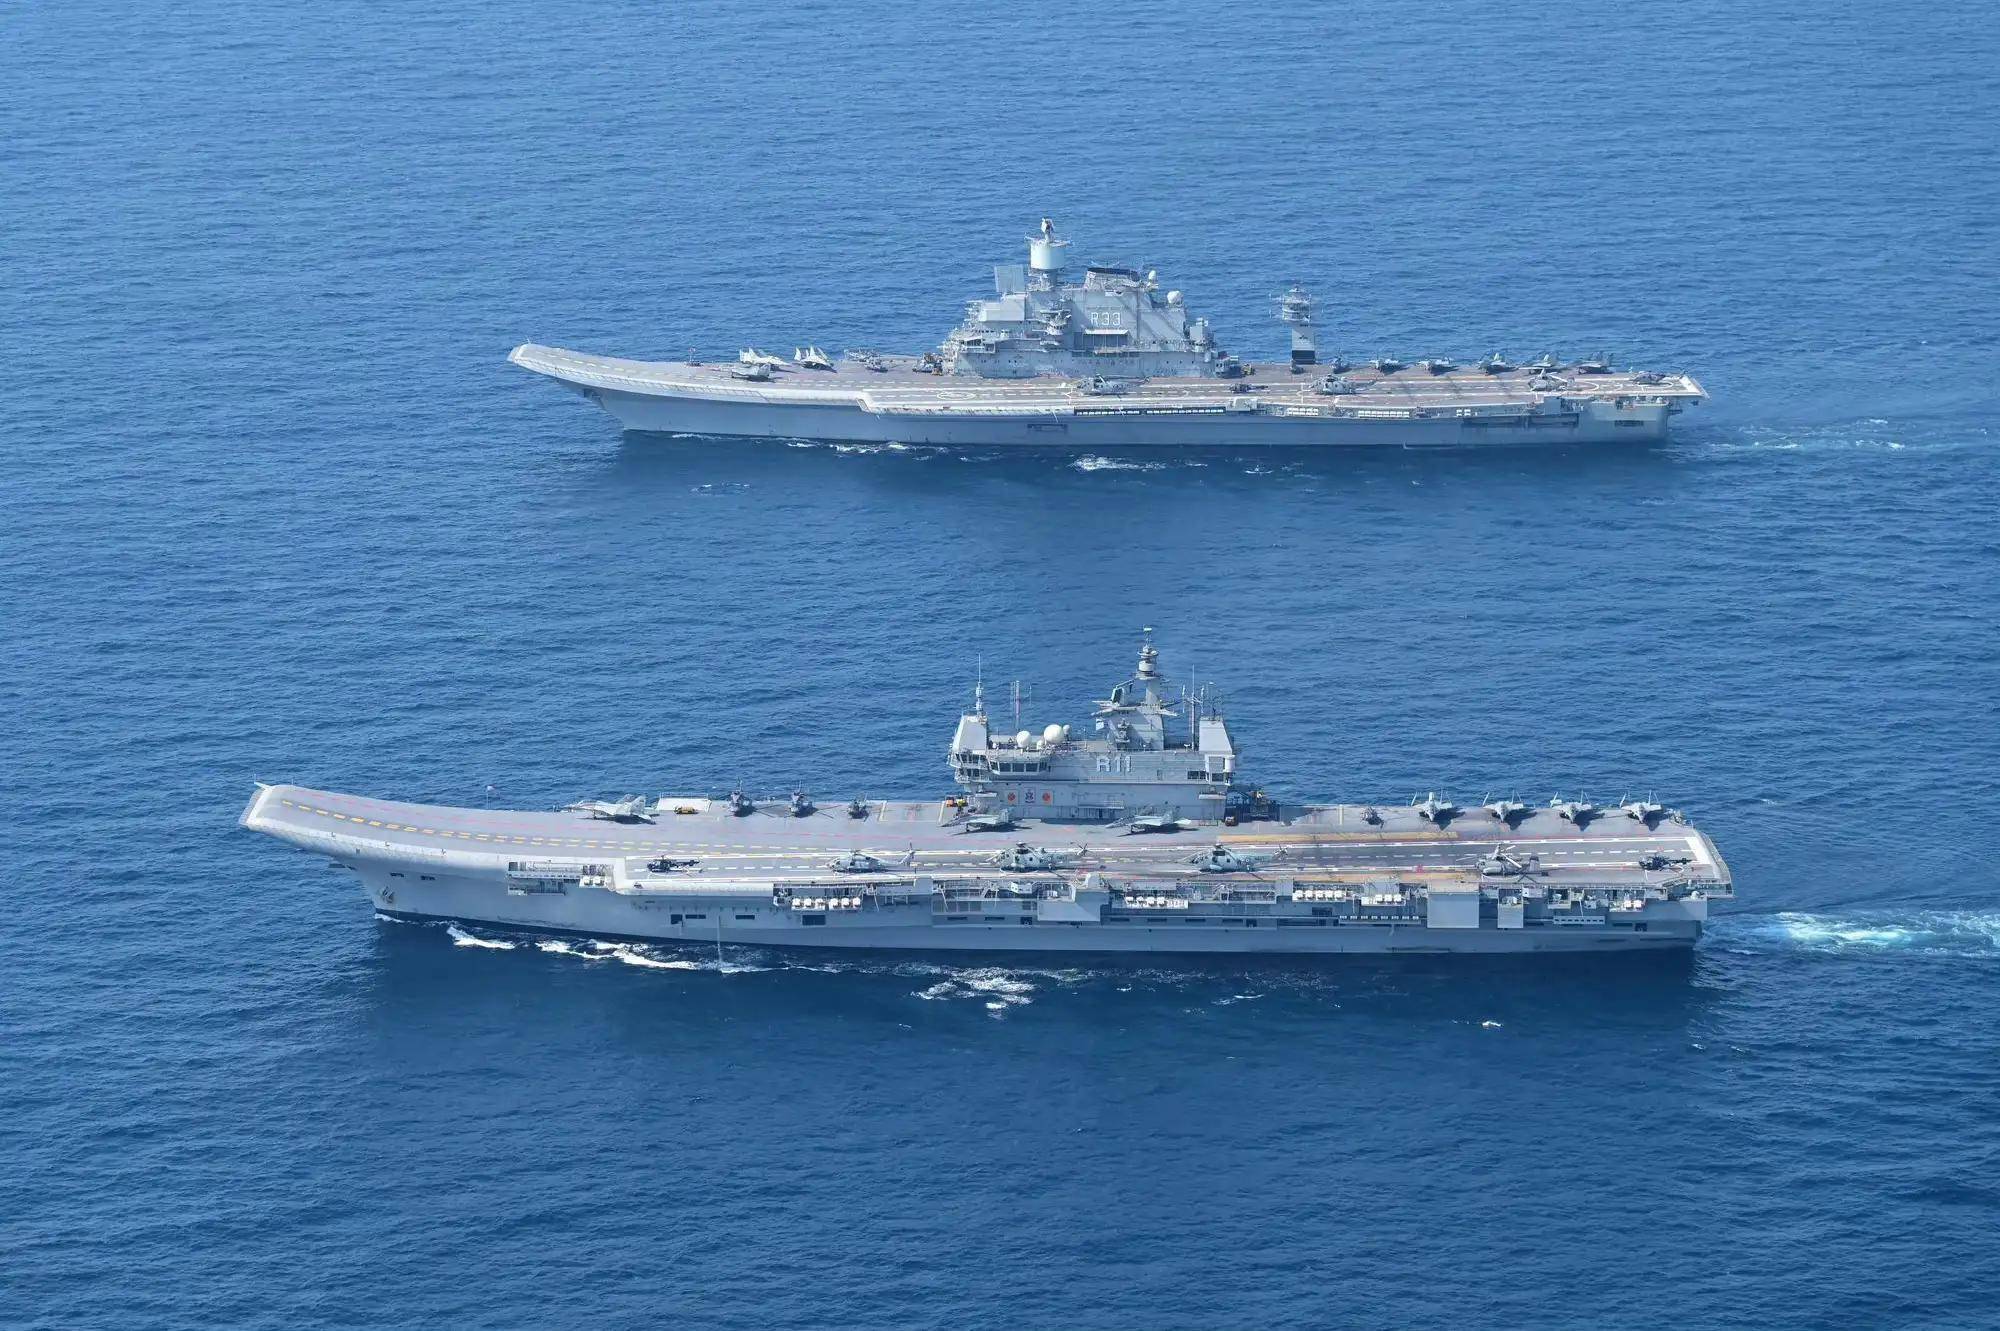 印度展示双航母编队,视力差拳头软,无外来干涉仍能控制印太航线